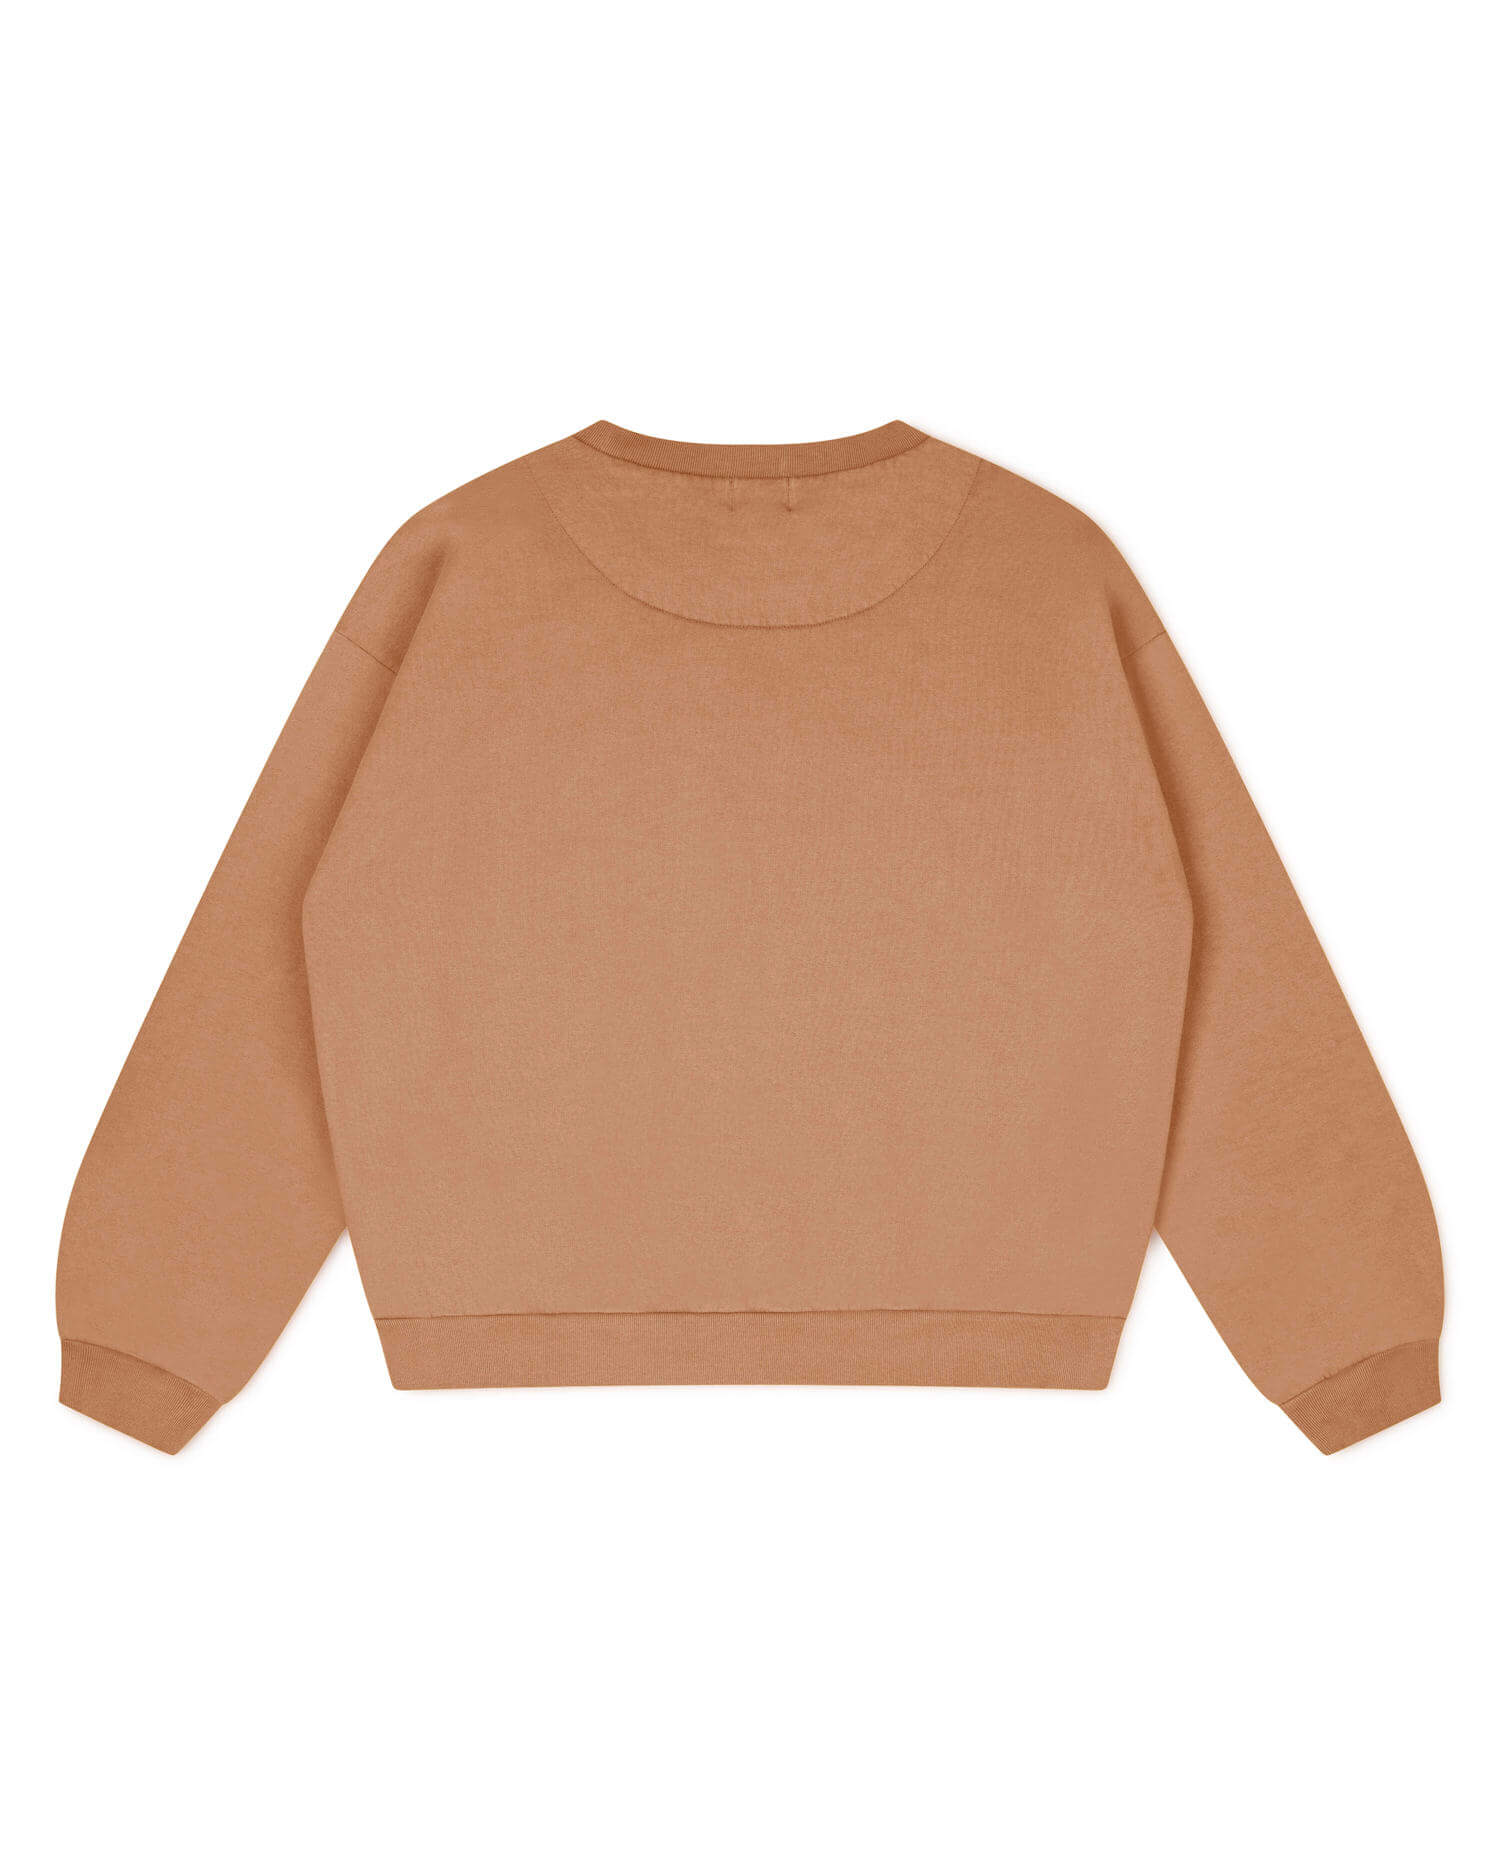 Hellbrauner Sweater aus 100% Bio-Baumwolle von Matona